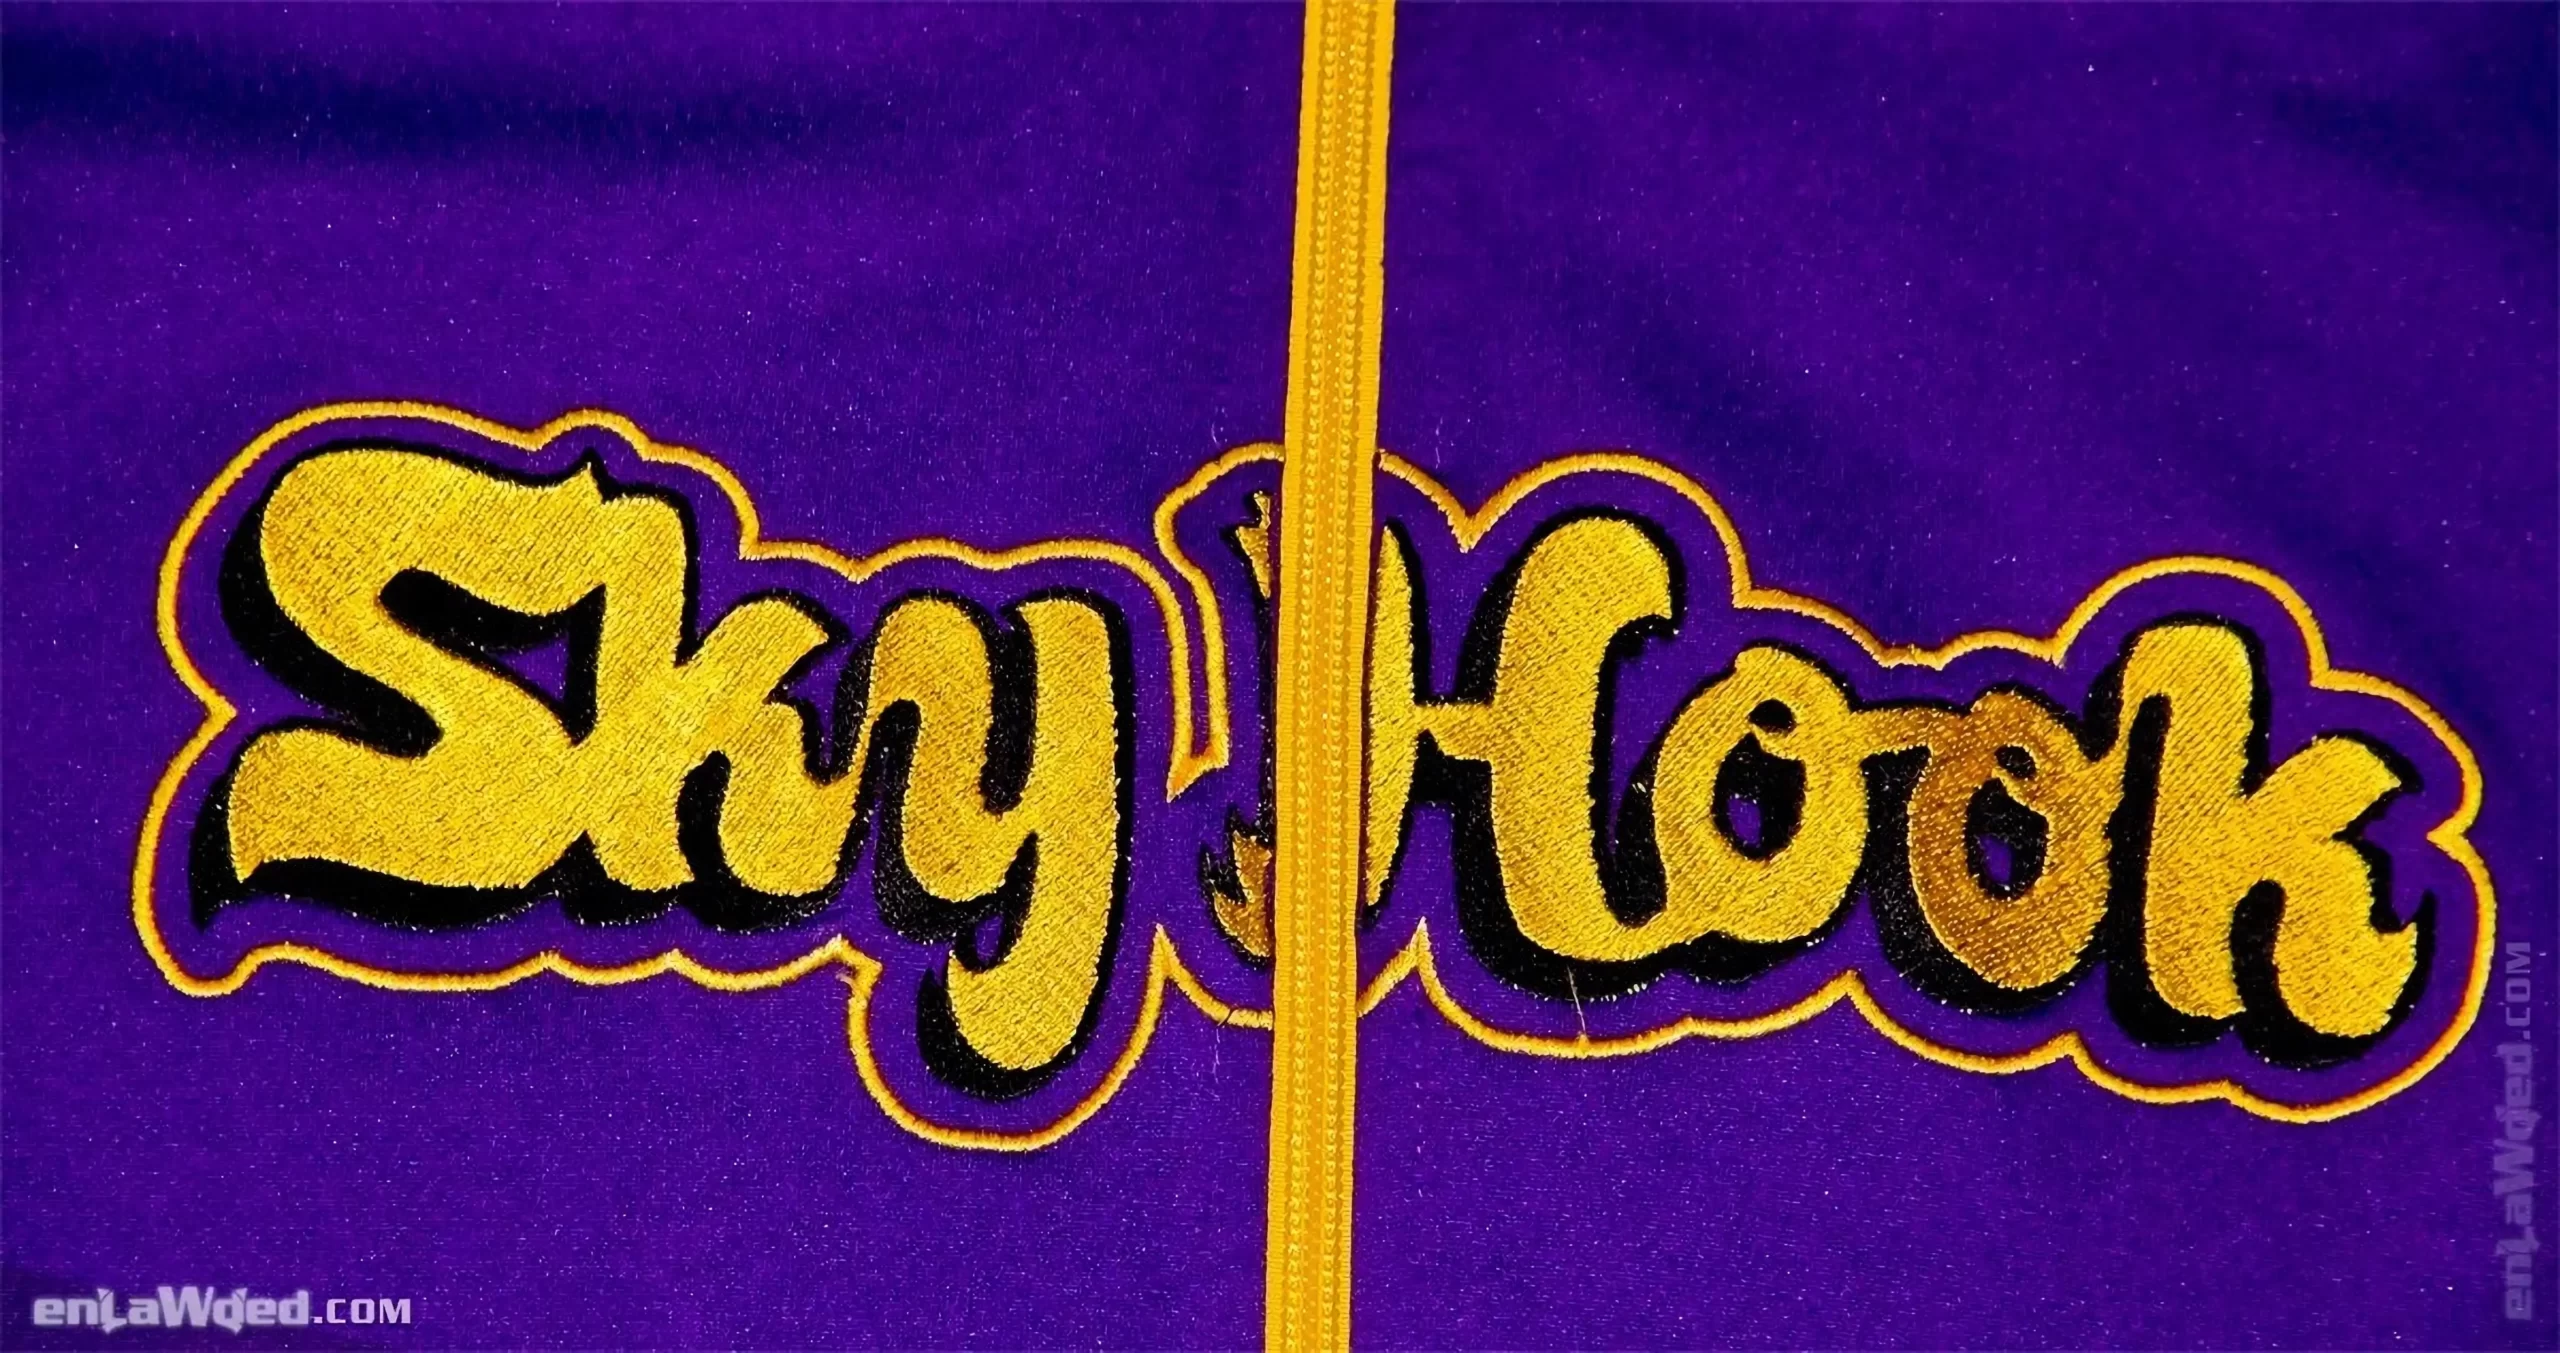 Men’s 2004 SkyHook Lakers #33 Track Top by Adidas: Rookie (EnLawded.com file #lmchk90365ip2y124421kg9st)